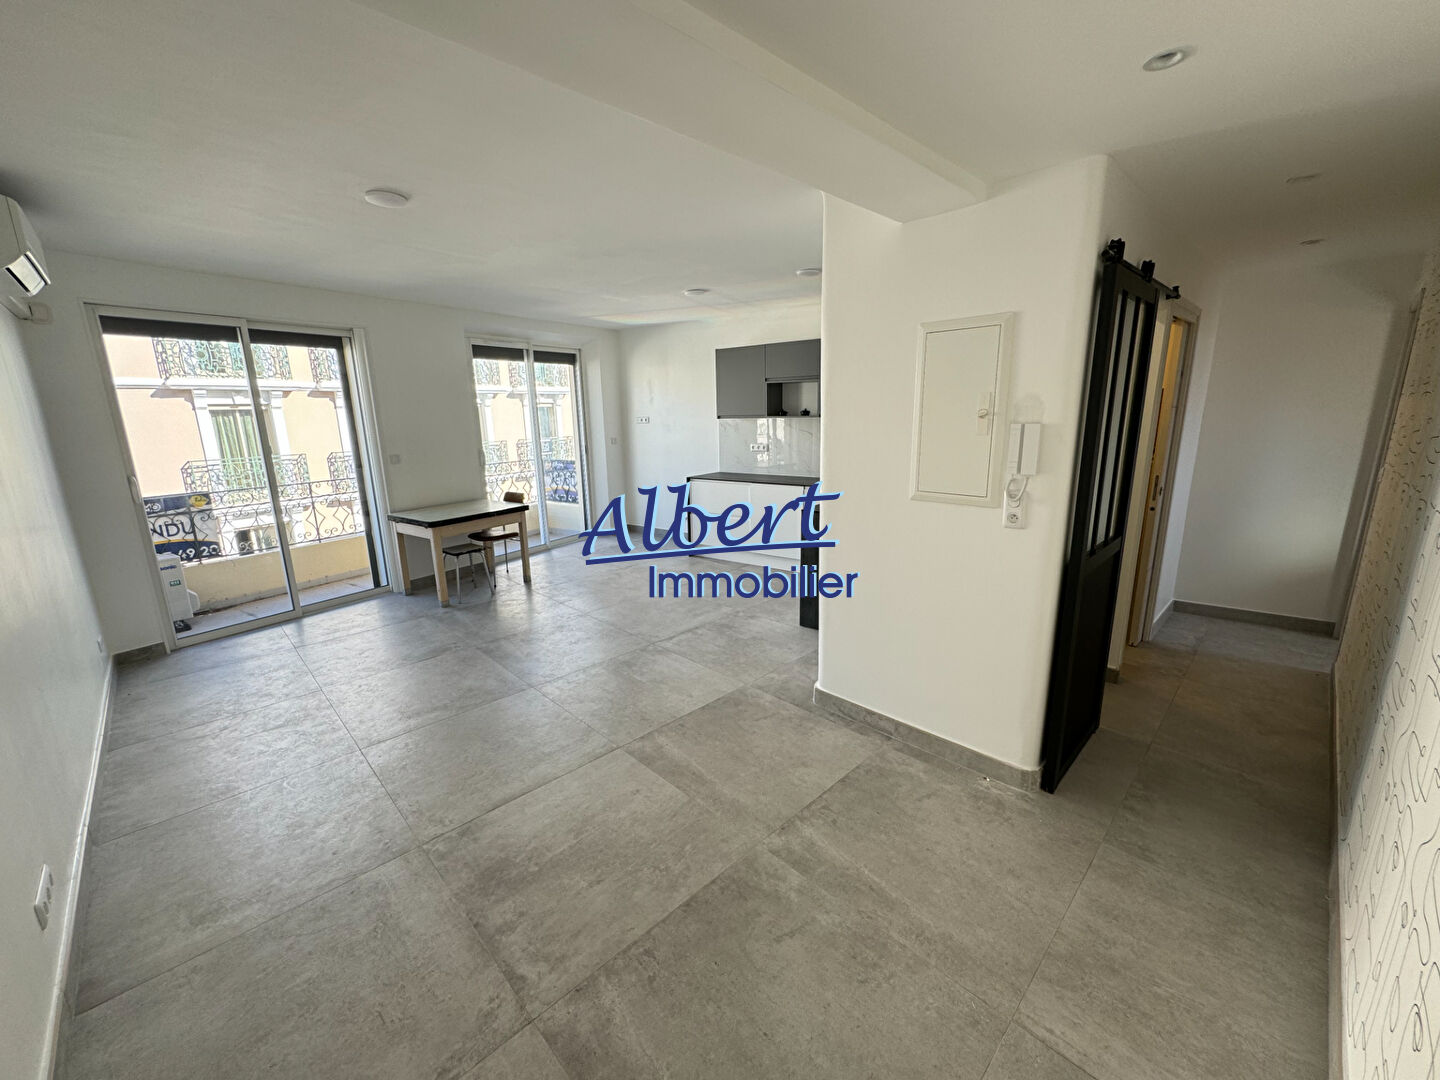 Vente Appartement 57m² 3 Pièces à Sanary-sur-Mer (83110) - Albert Immobilier